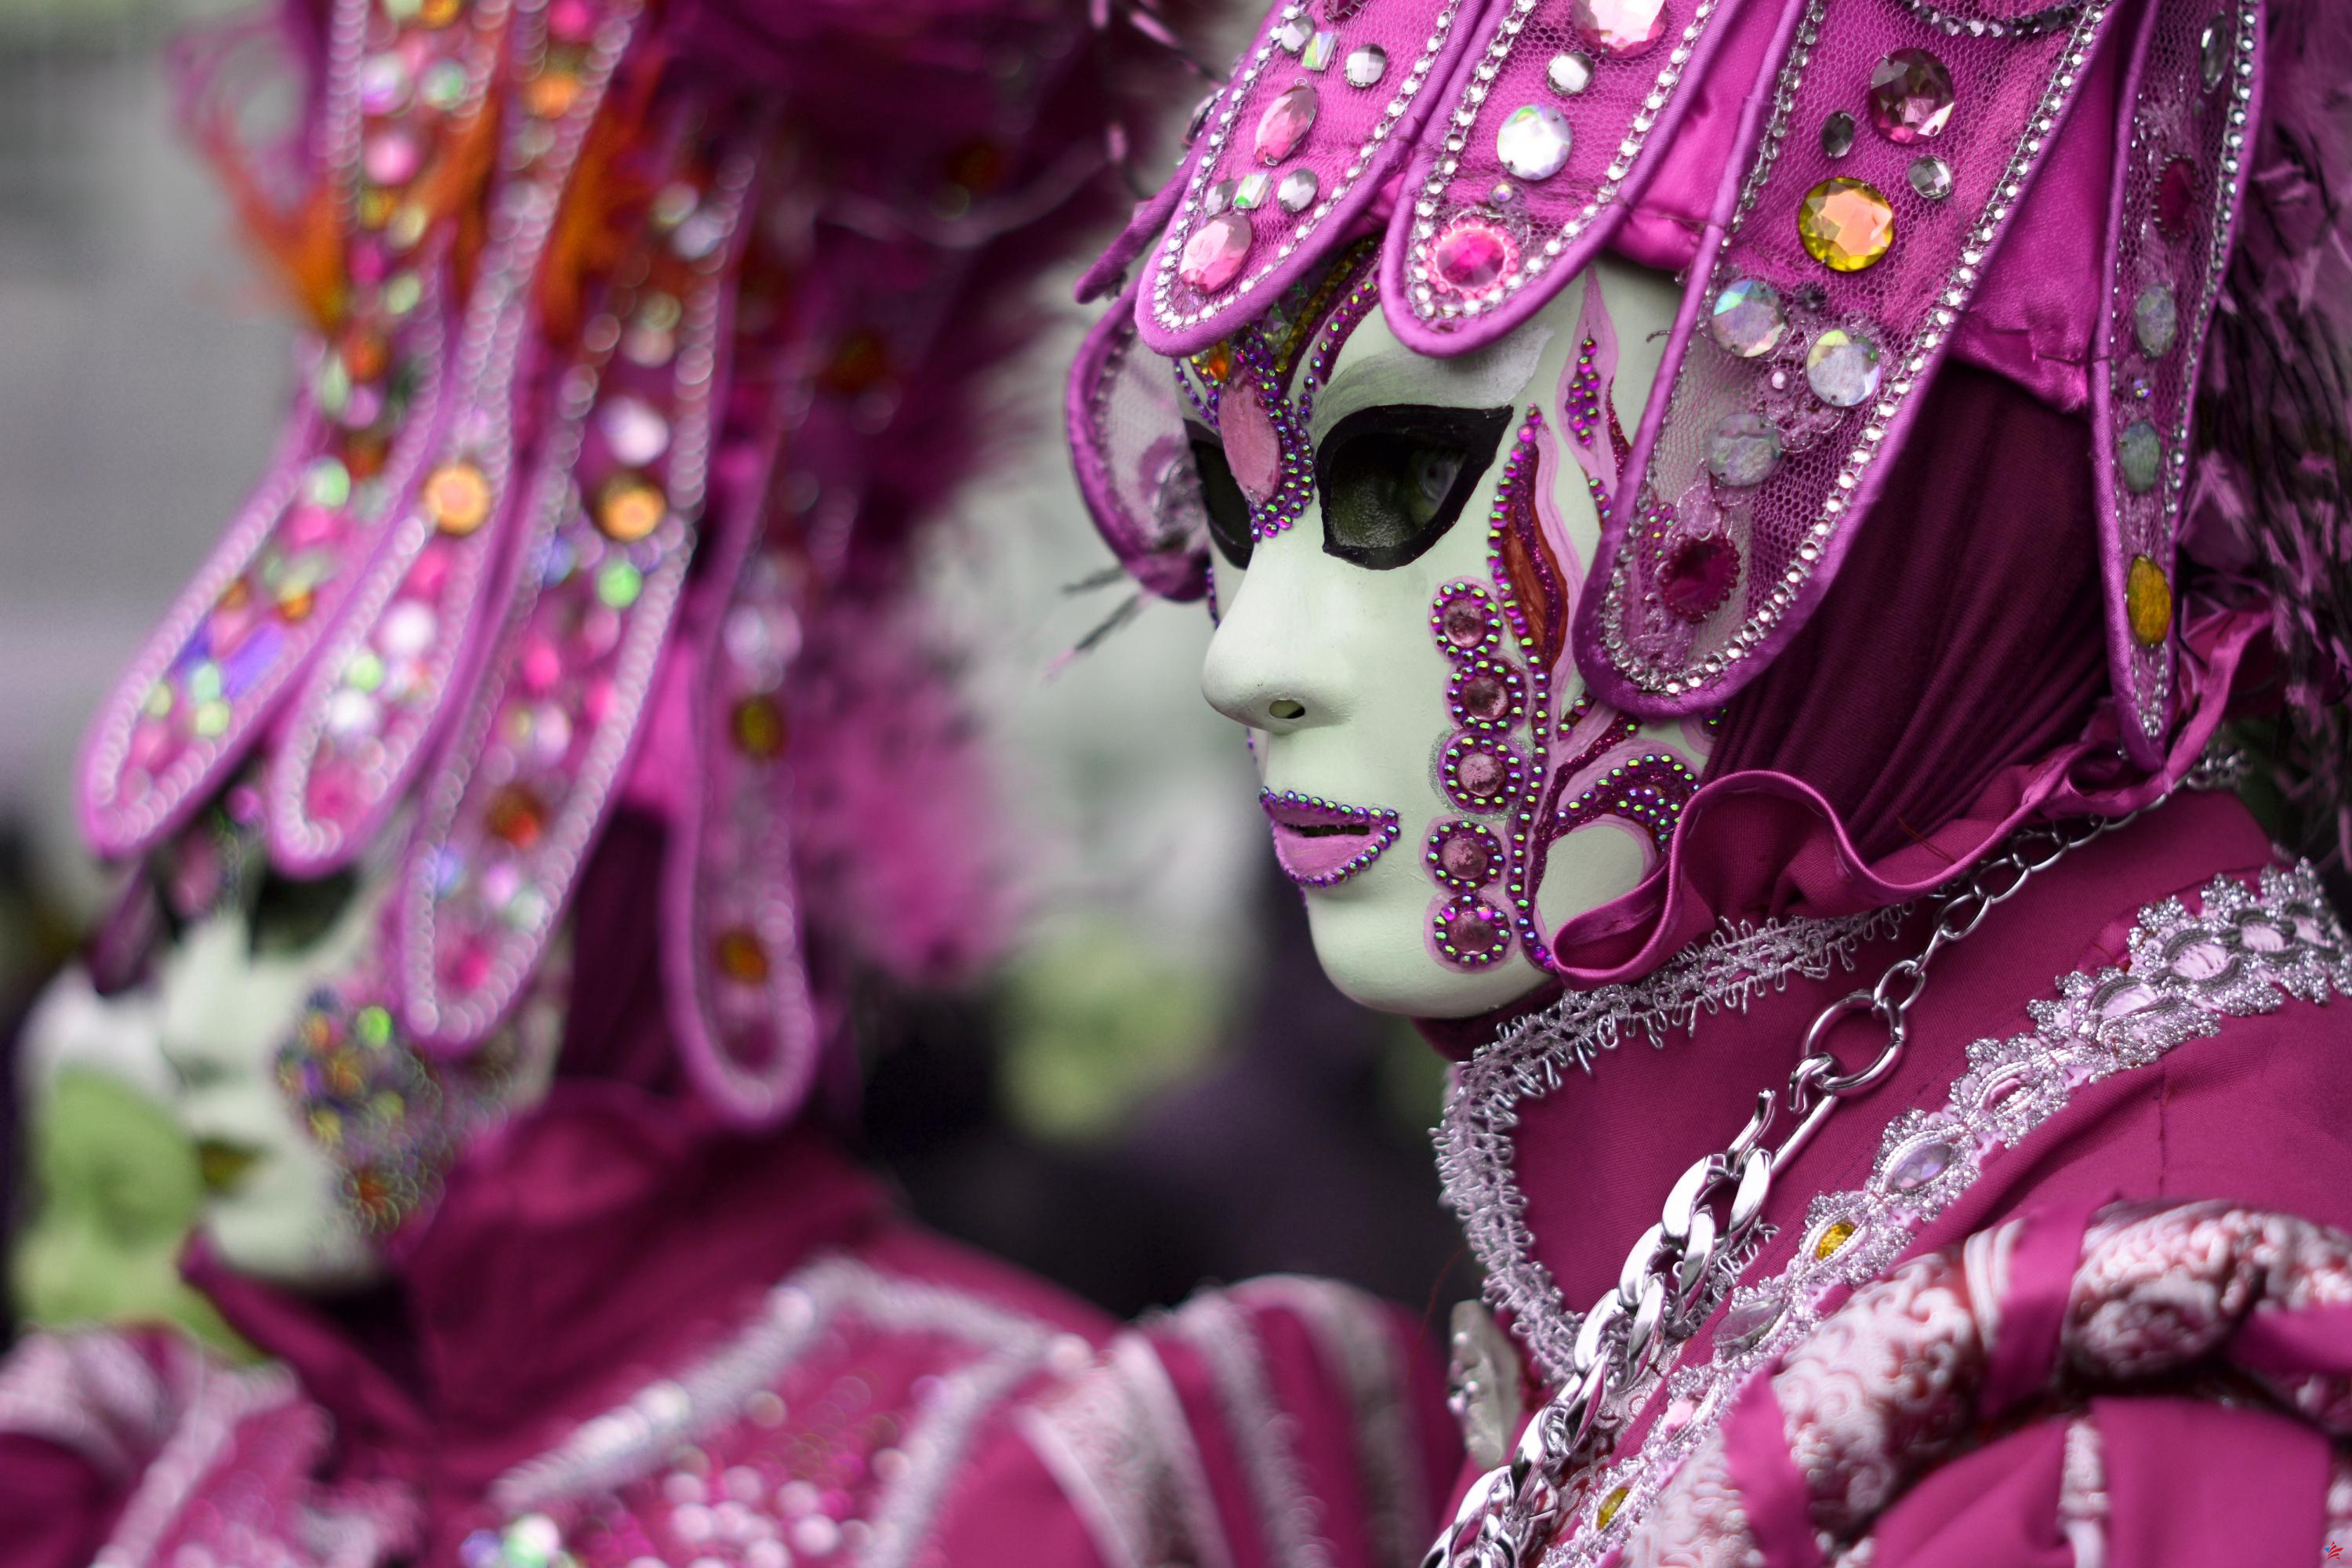 Acaba de comenzar uno de los carnavales más esperados del mundo